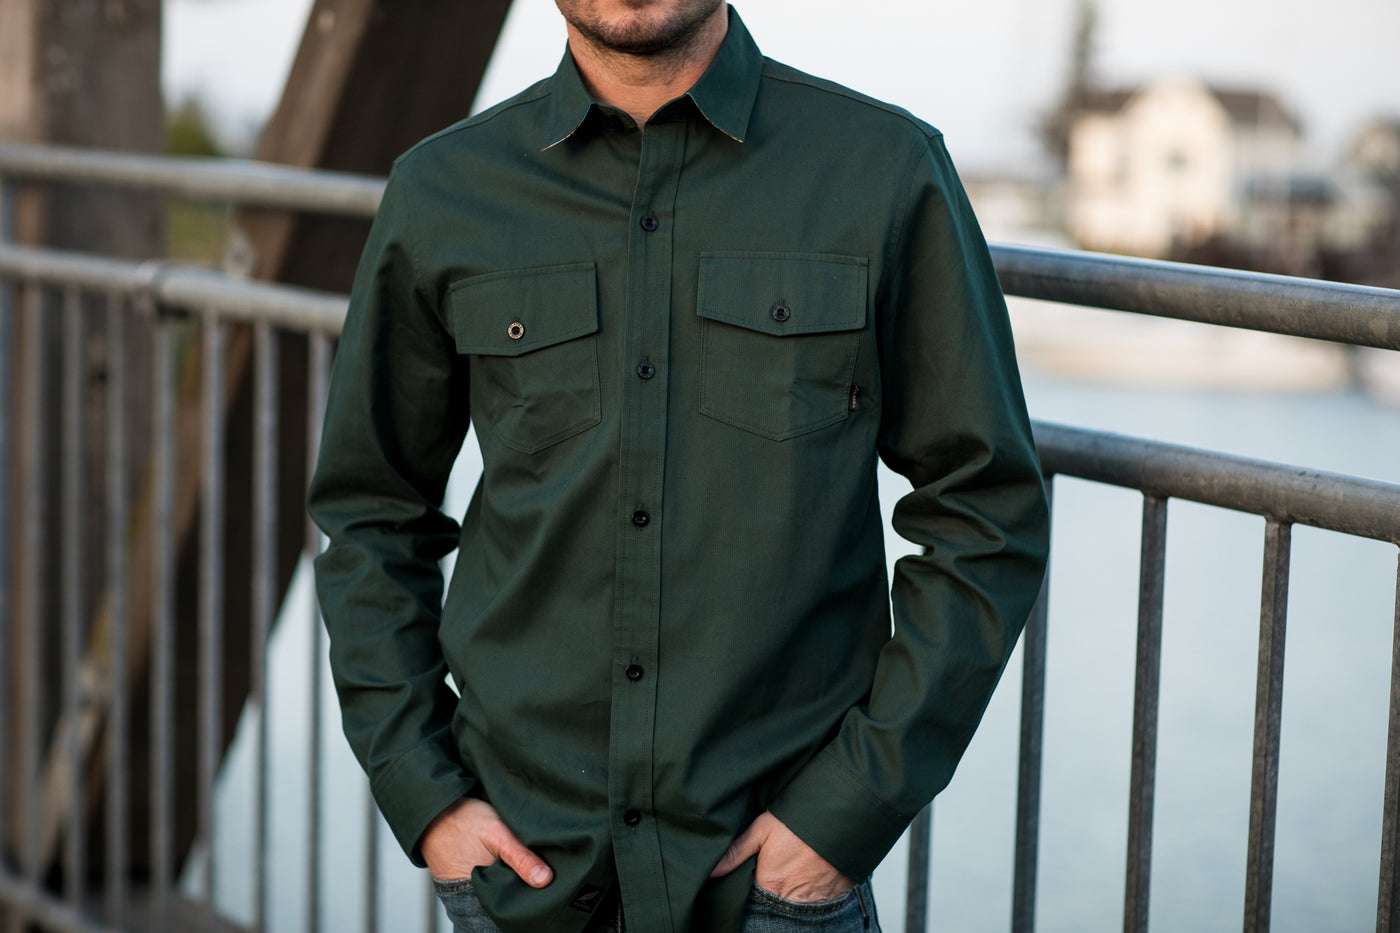 Men's Leon Workhorse Shirt - Fir Green Pincord